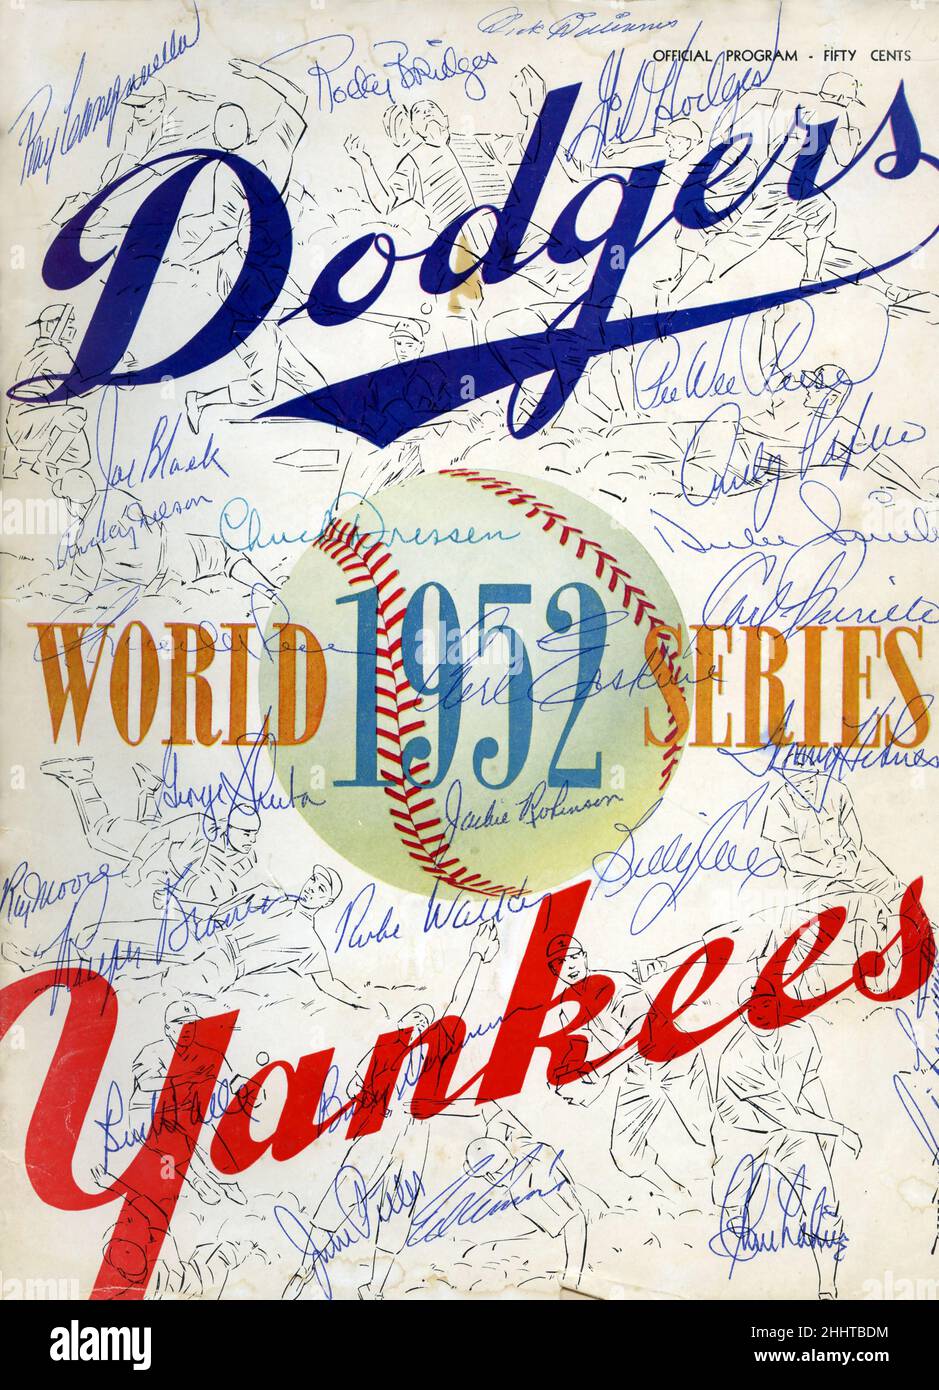 Dodgers Yankees 1952 Programa de la Serie Mundial autografiado por todo el equipo de Dodgers de Brooklyn. Foto de stock